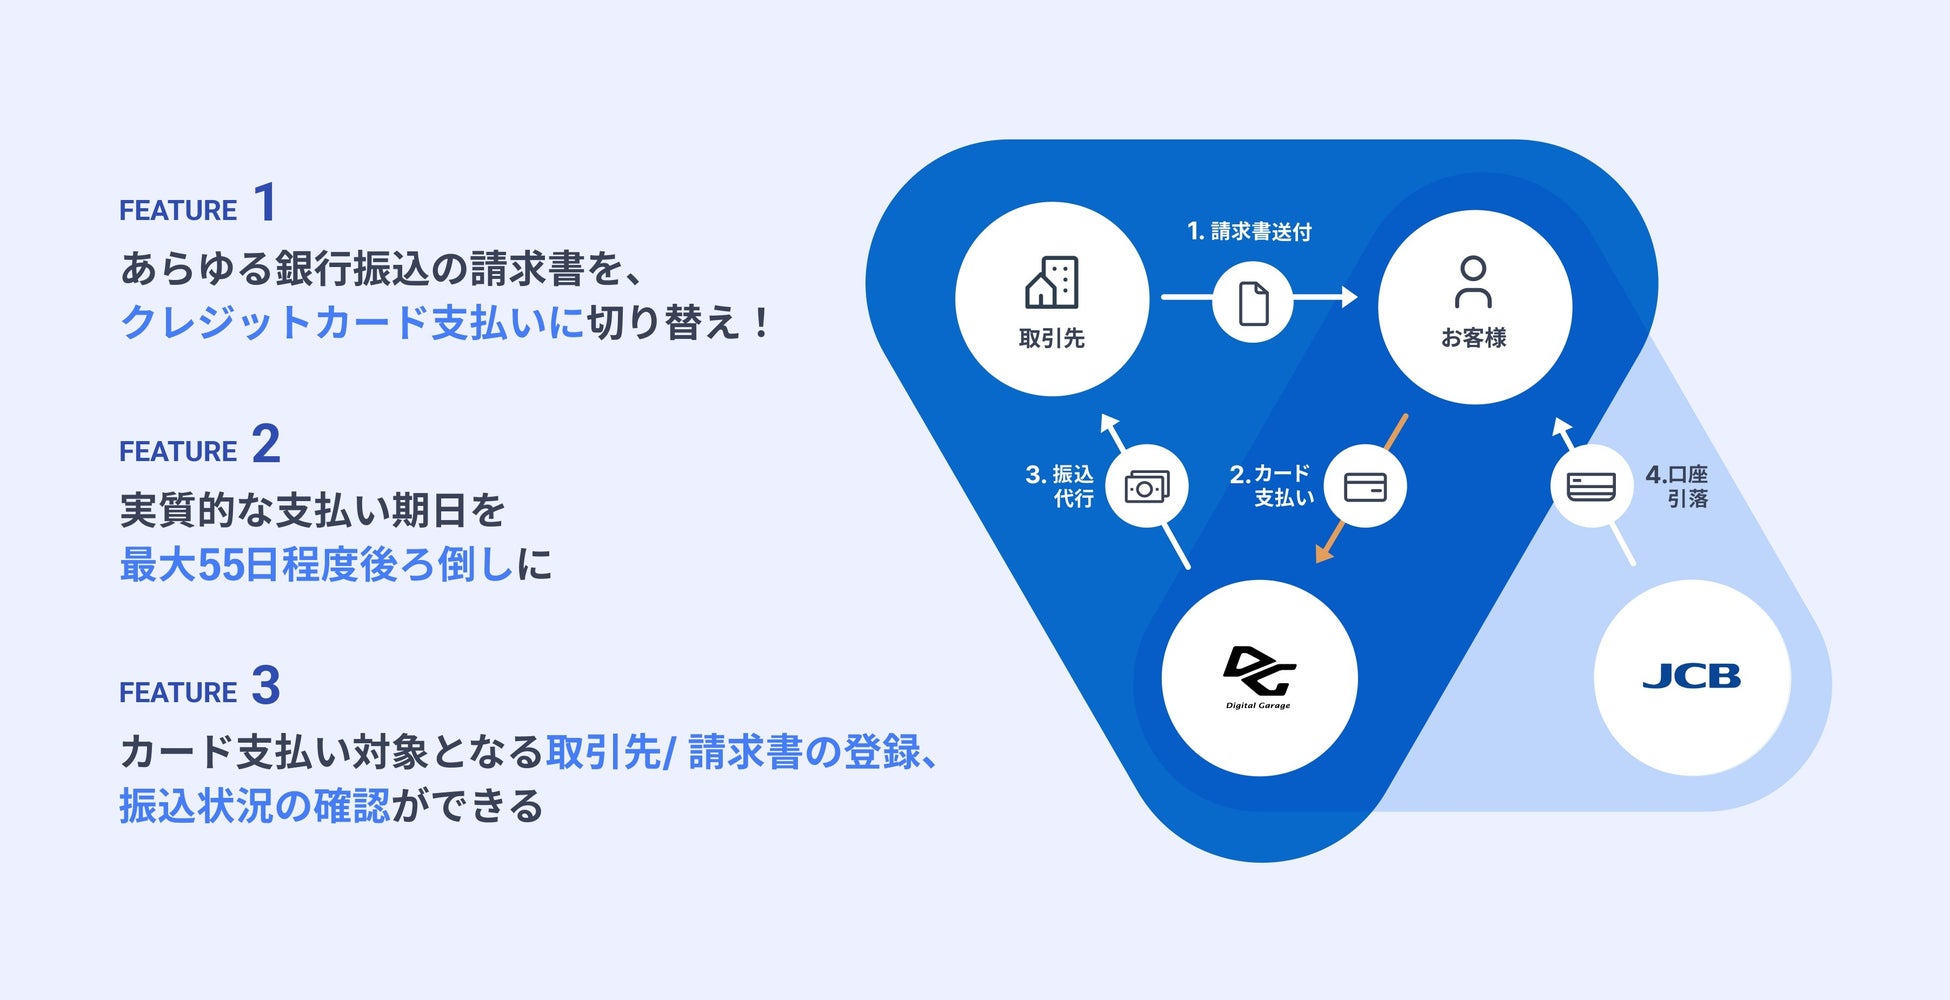 Eight Roads Ventures Japan、280億円の第3号ファンドを設立。国内の起業家を戦略面からハンズオンで支援する仕組み作りを加速